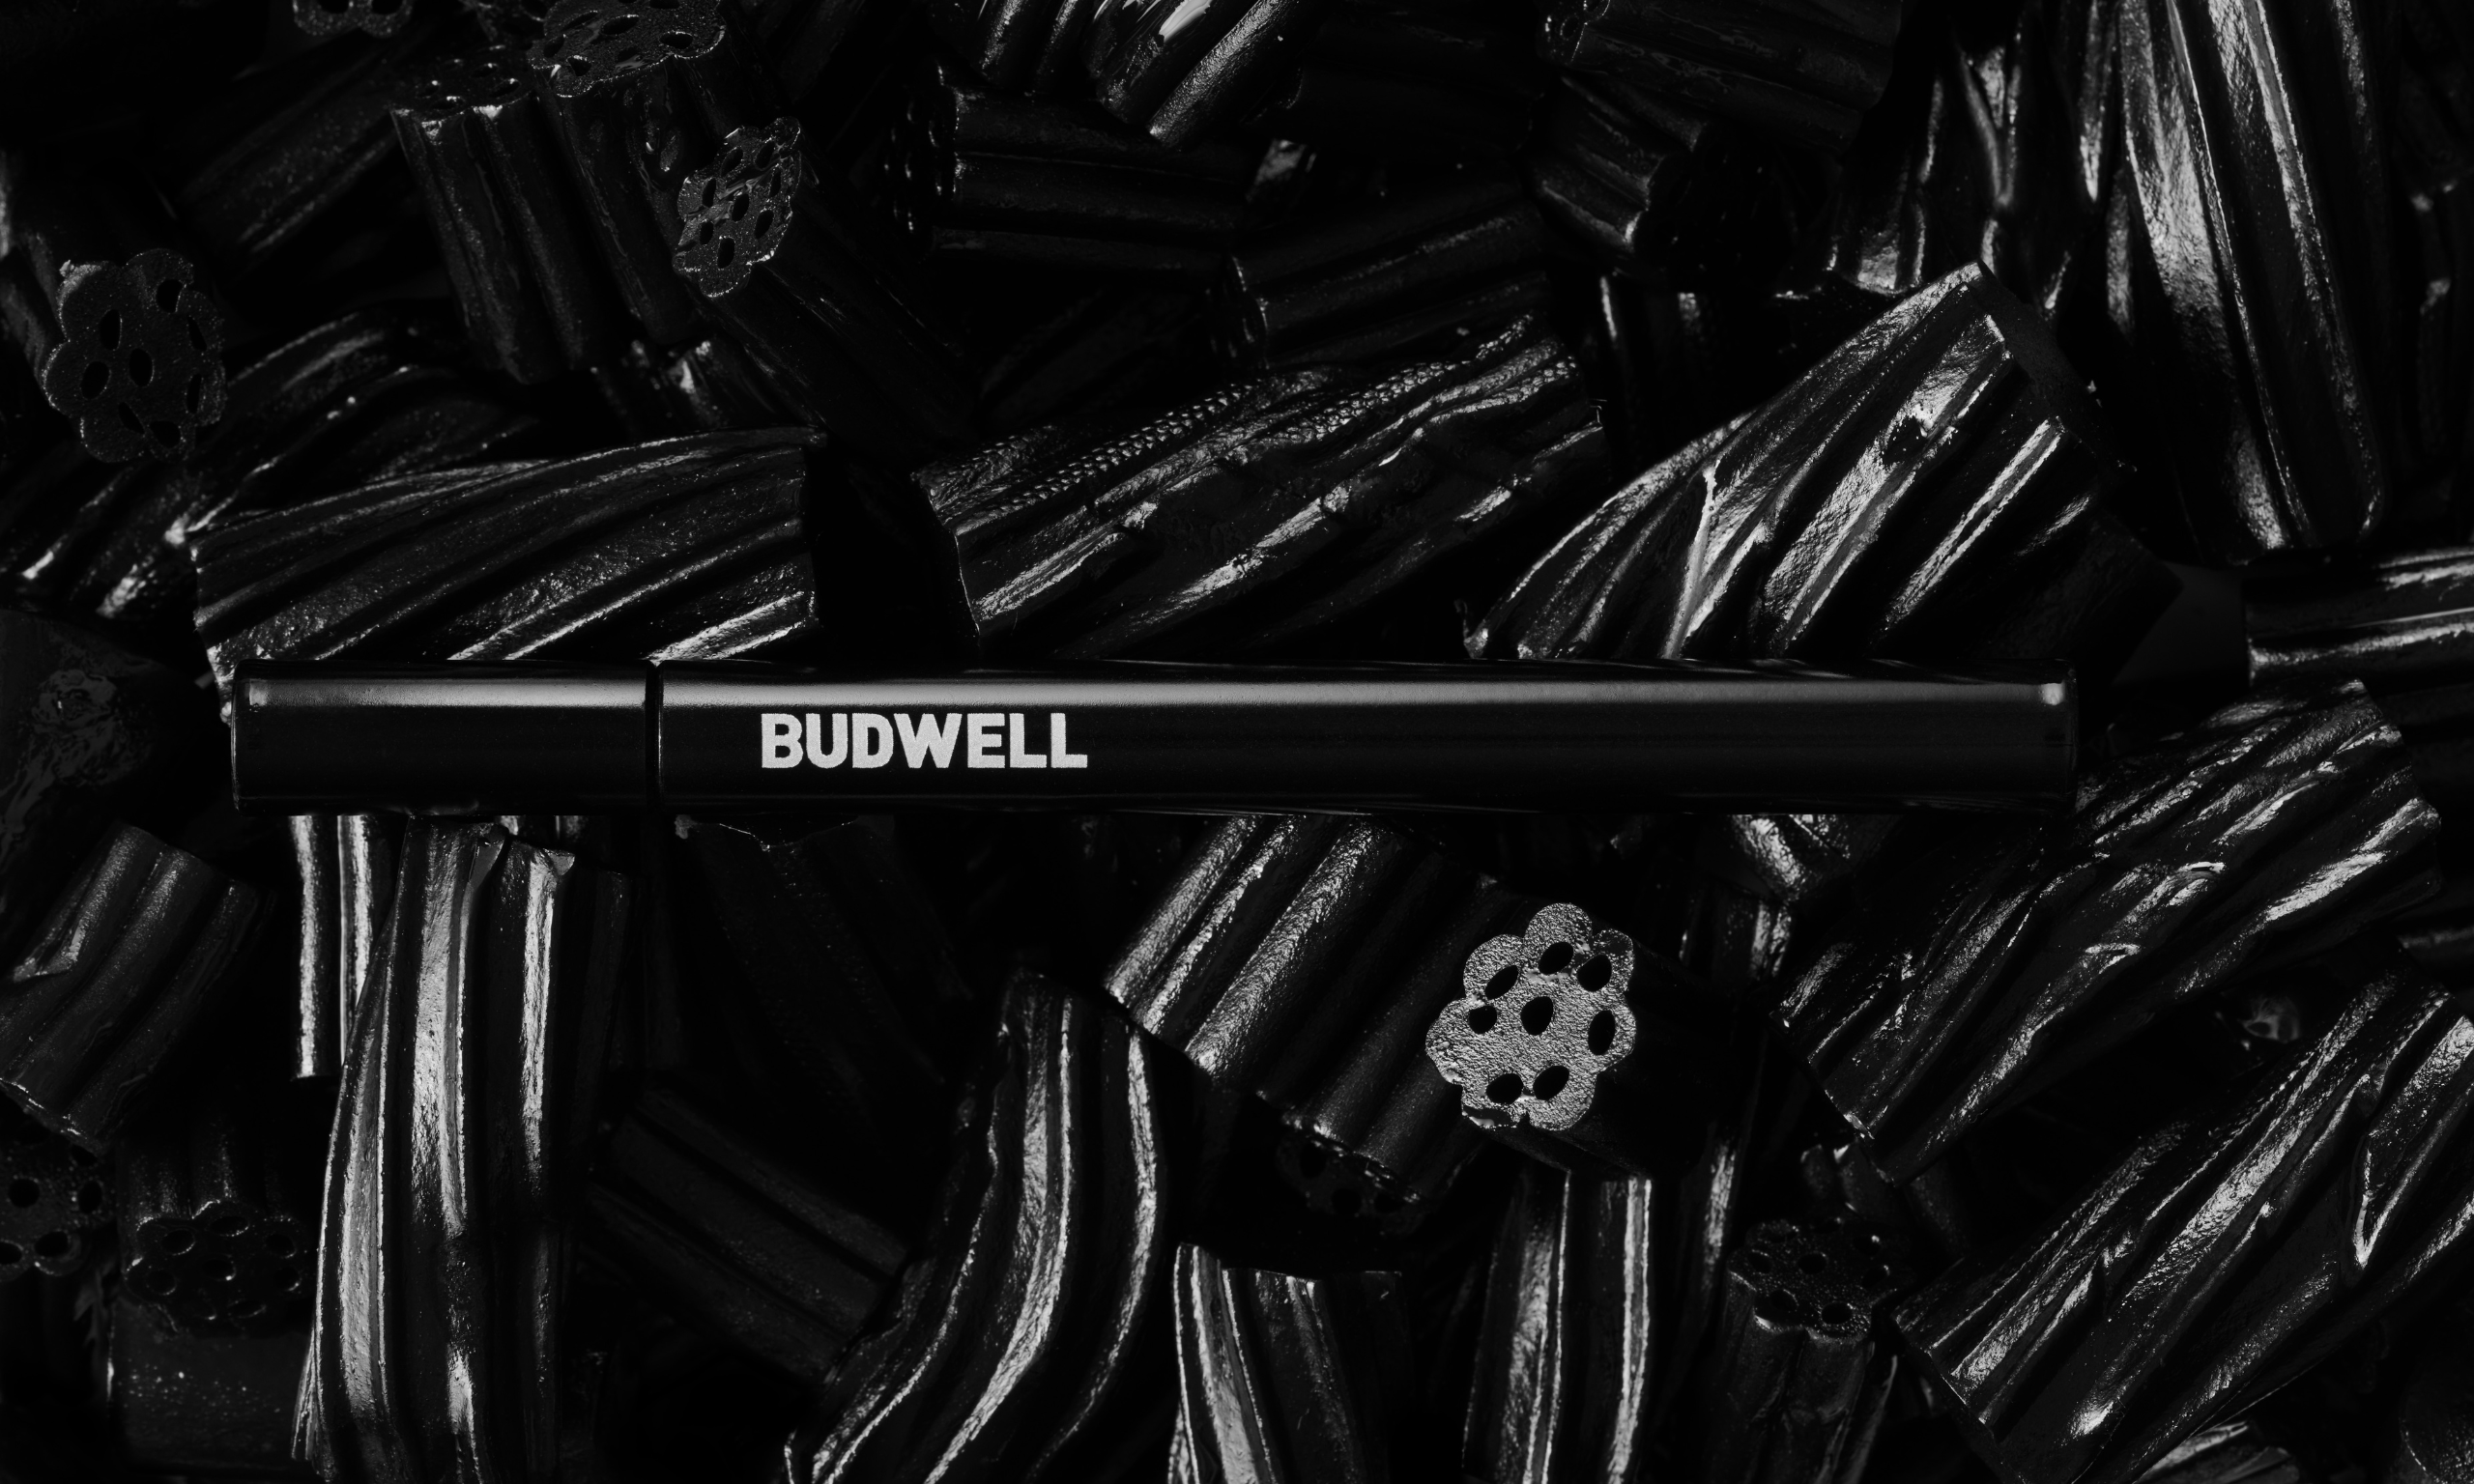 Budwell